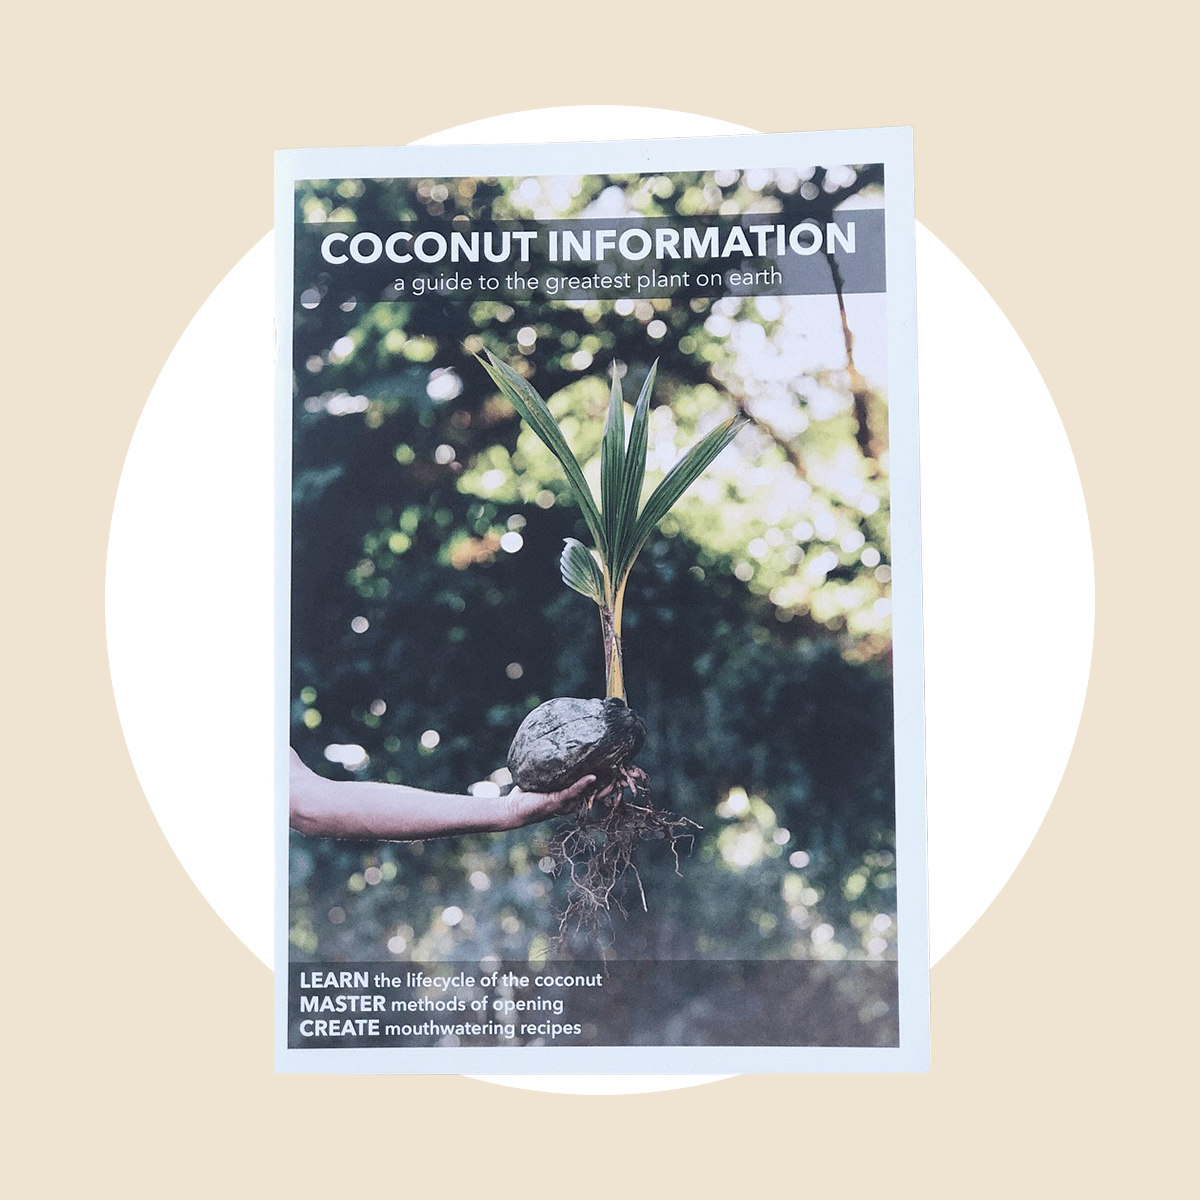 Coconut Cookbook Ecomm Via Coconutinformation 001